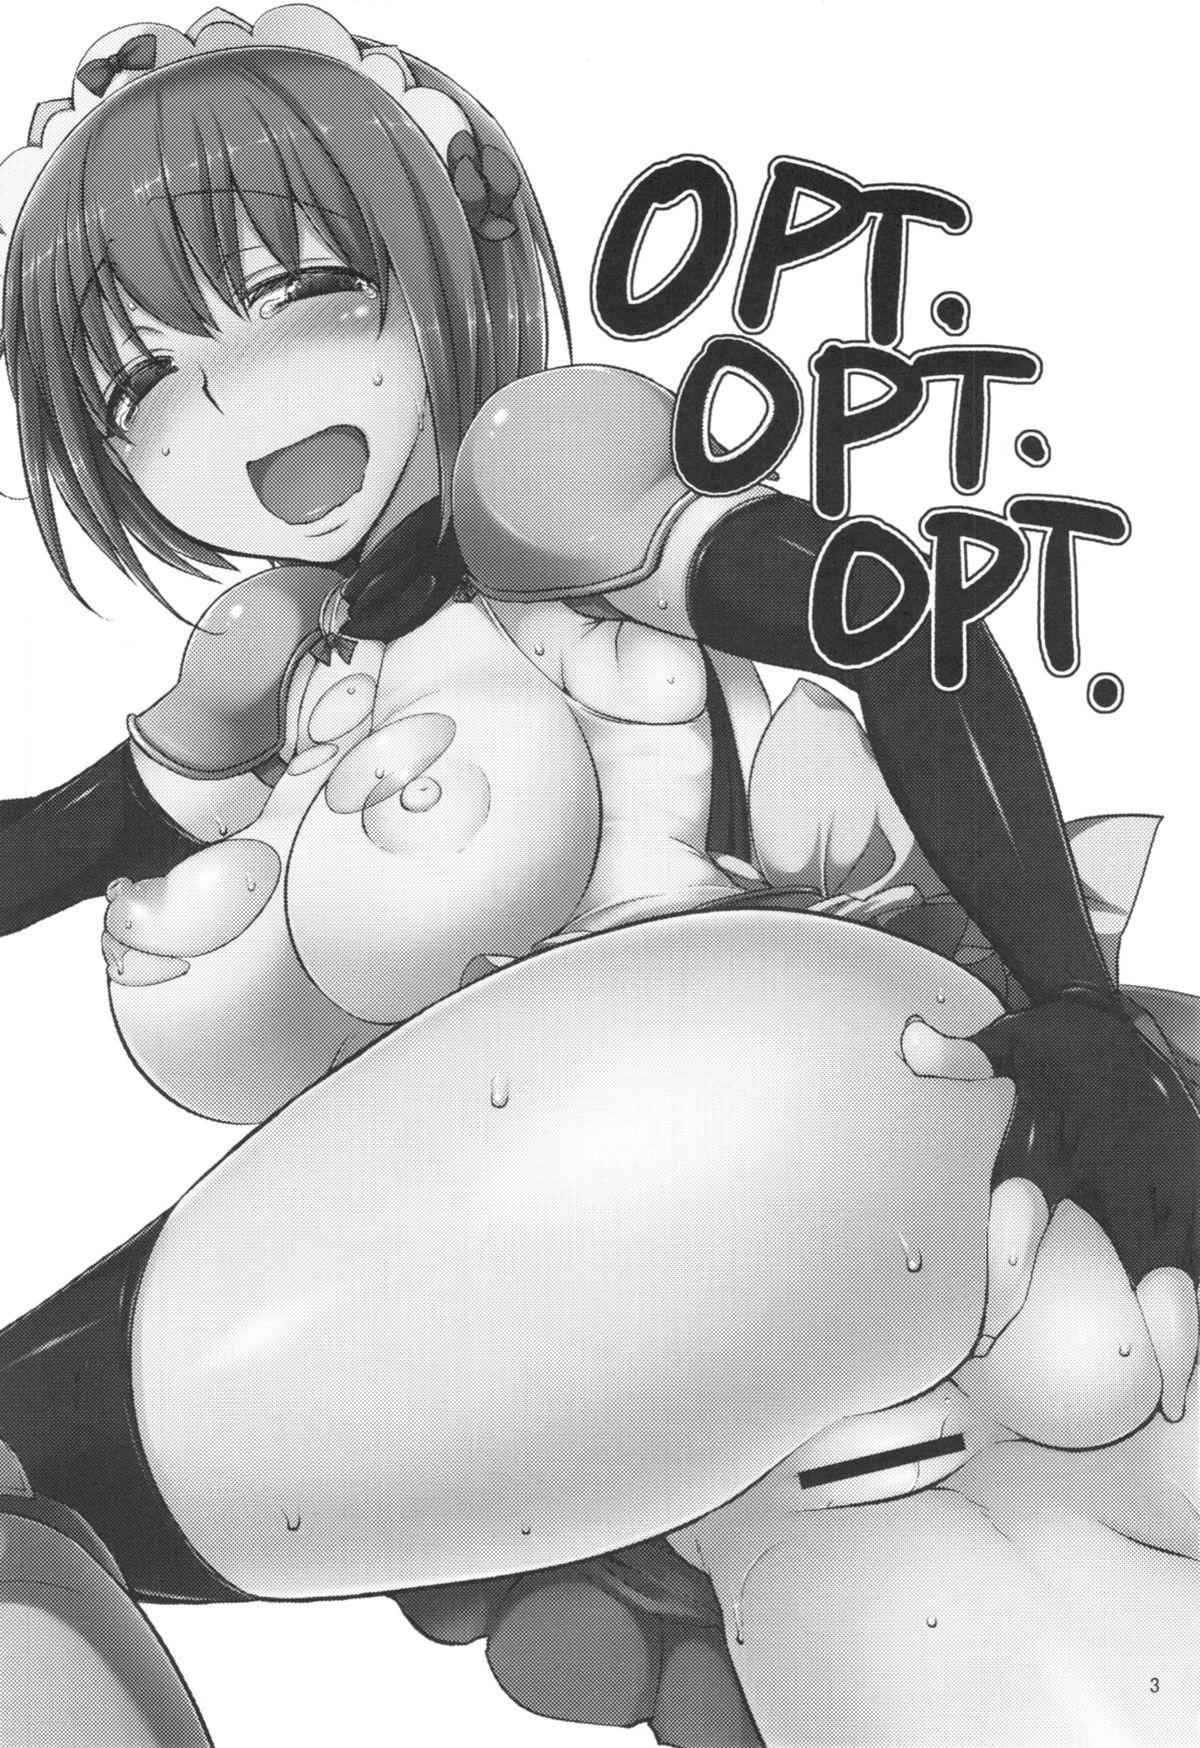 OPT☆OPT☆OPT☆ 2